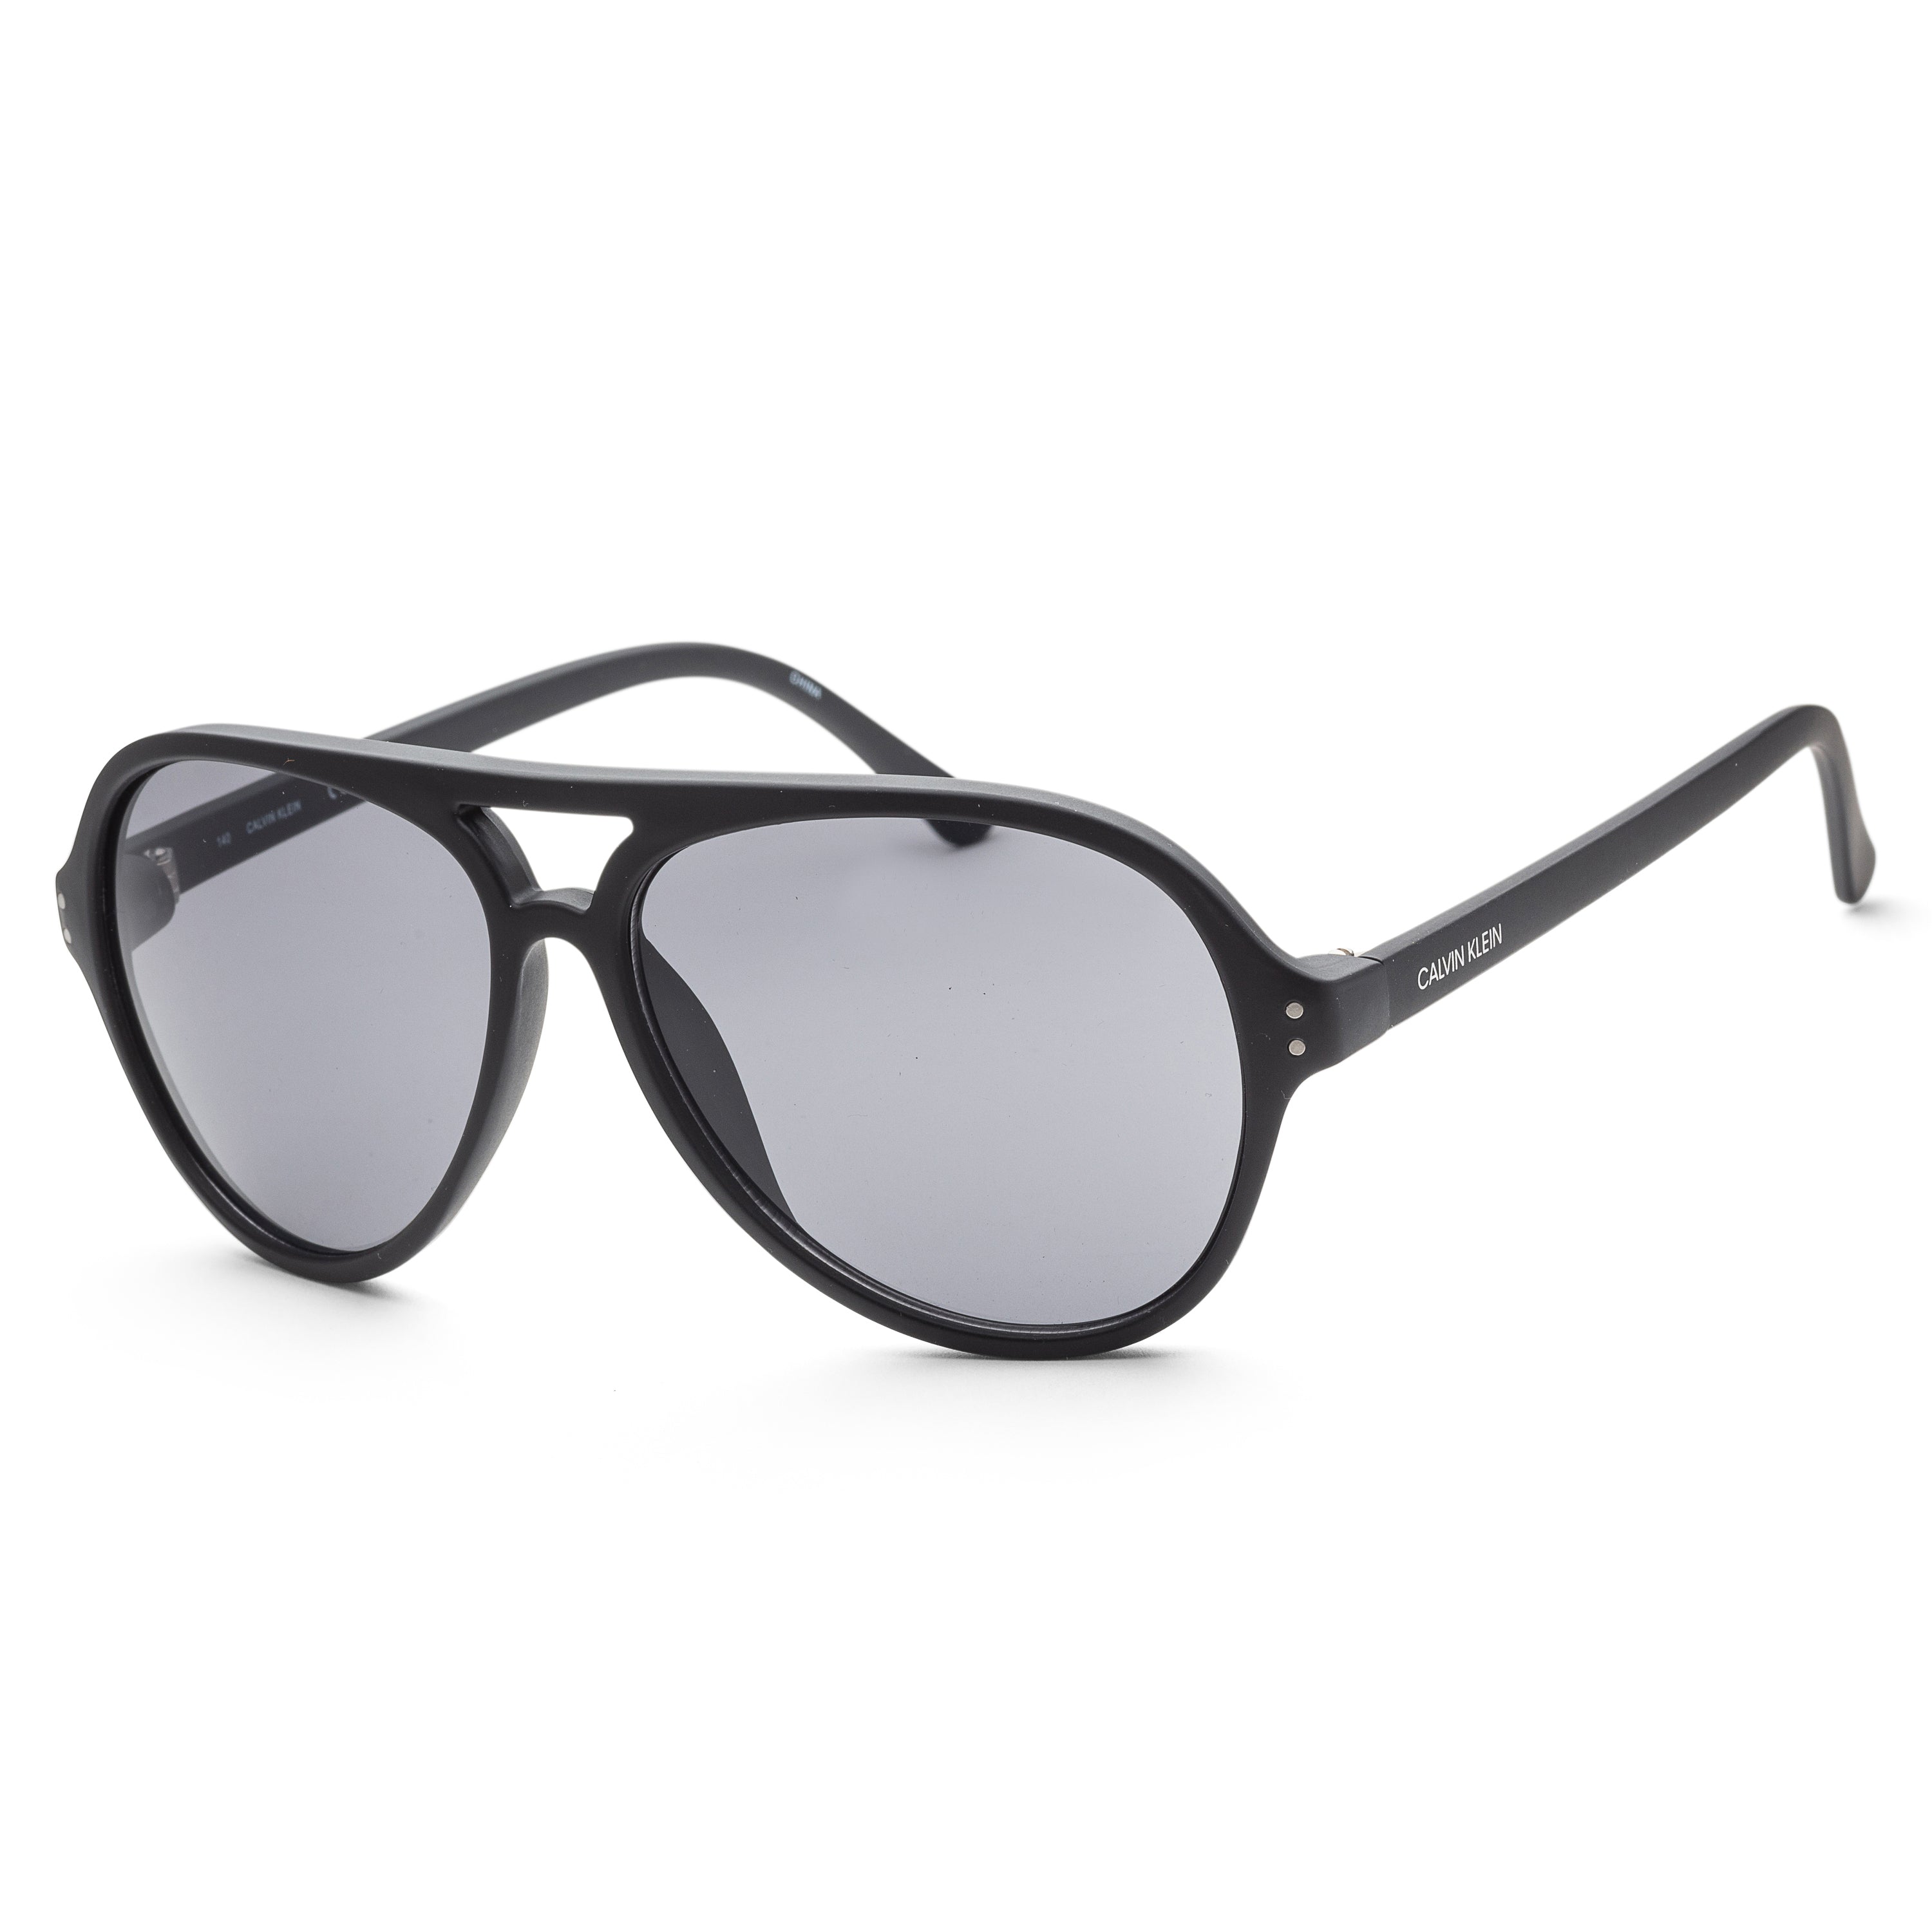 title:Calvin Klein Men's Fashion CK19532S-001 58mm Matte Black Sunglasses;color:Matte Black